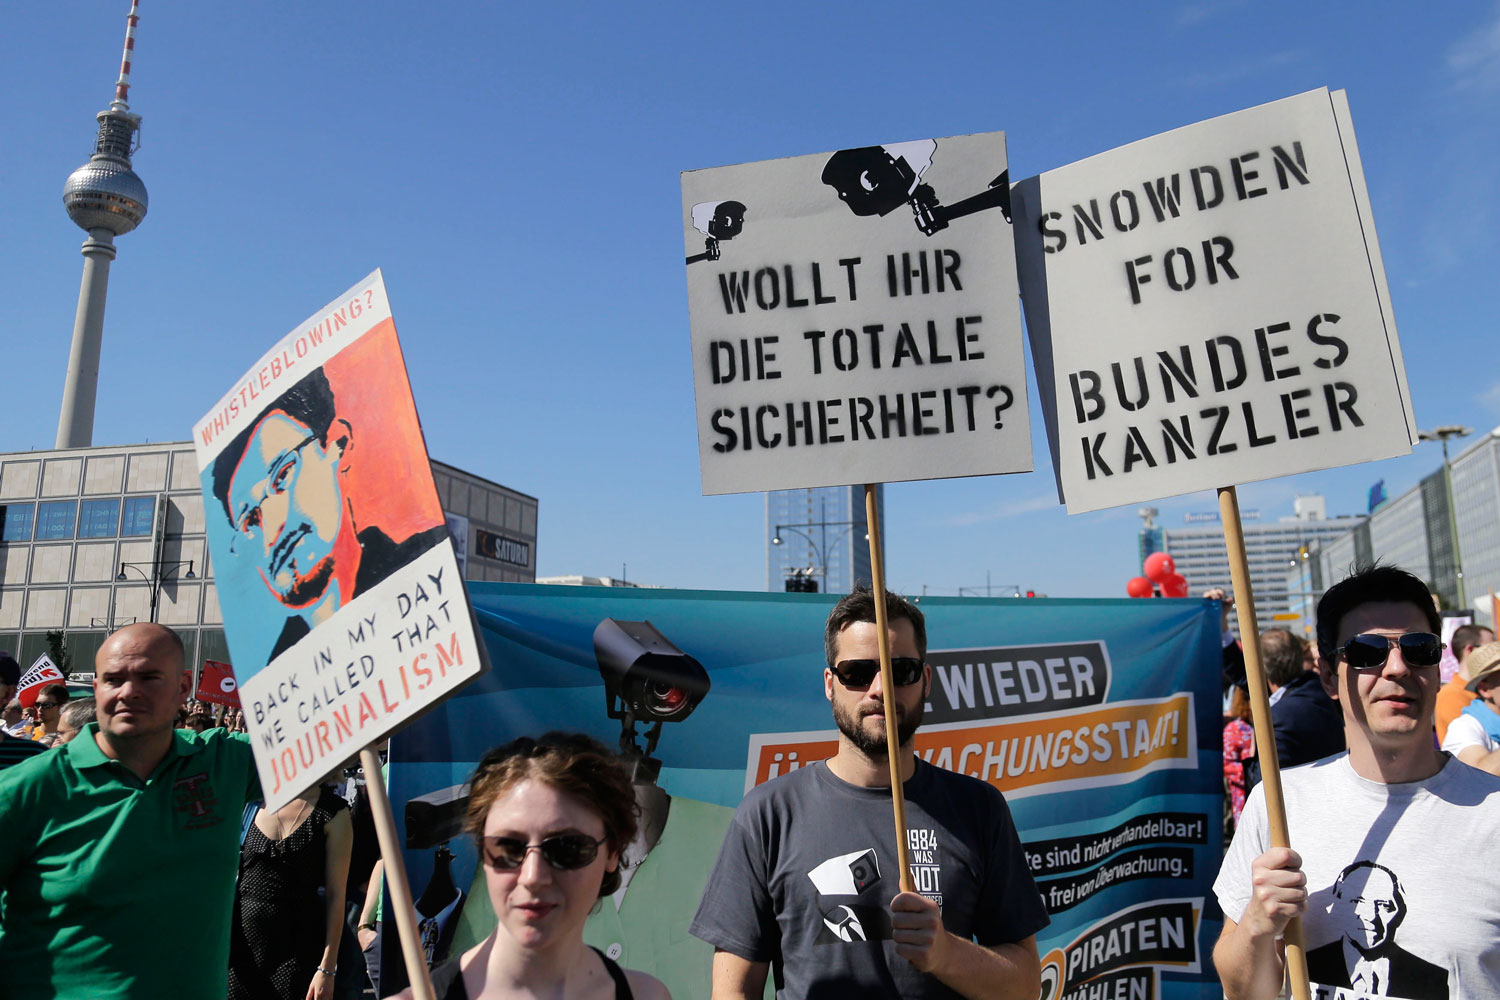 Edward Snowden gana popularidad en Alemania tras conocerse el espionaje